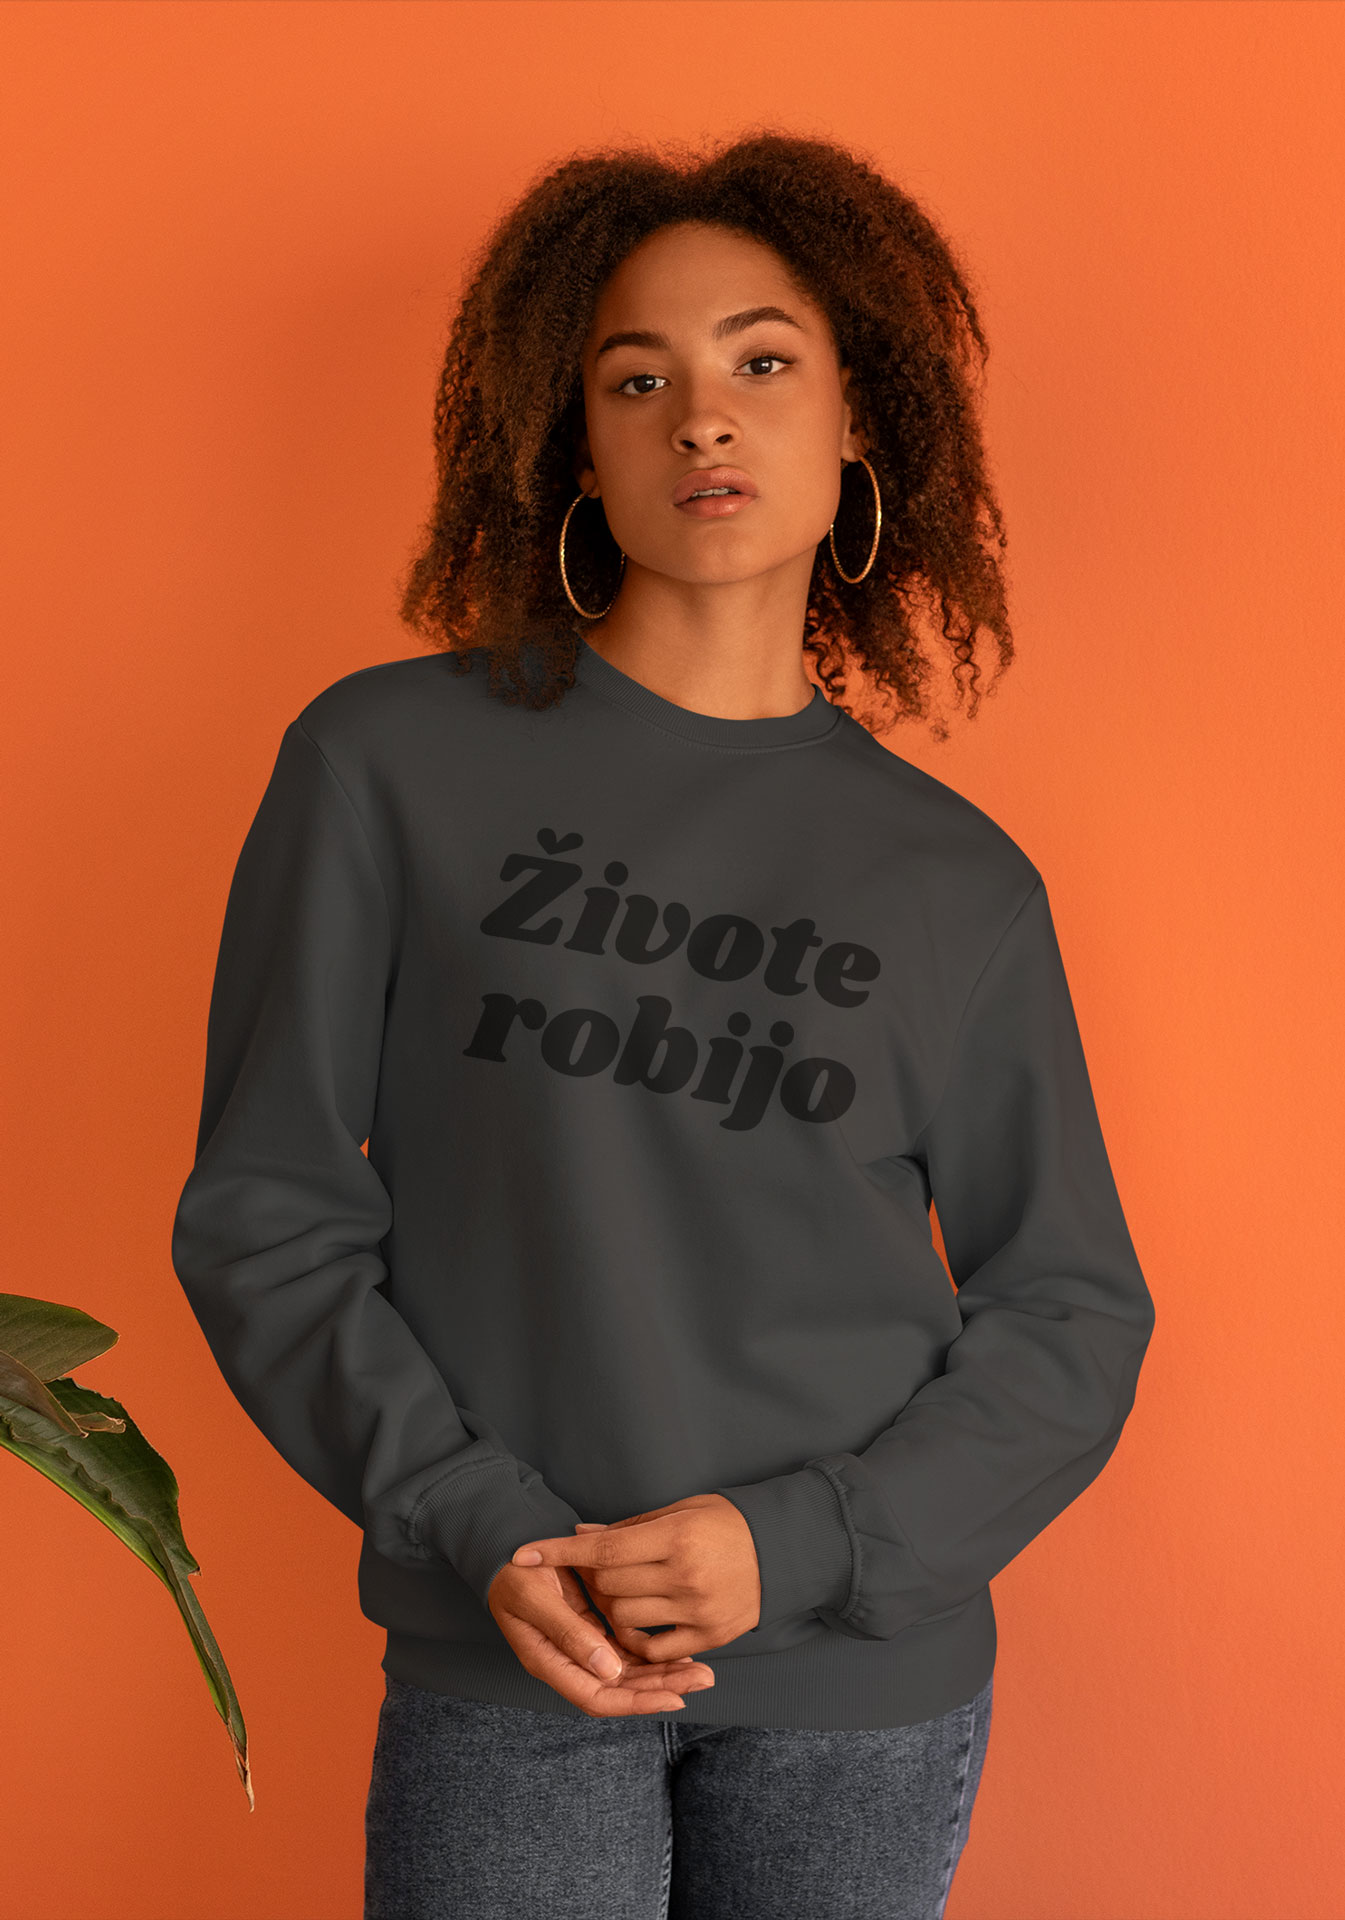 Zivote-Robijo-Black-Grey-Sweatshirt